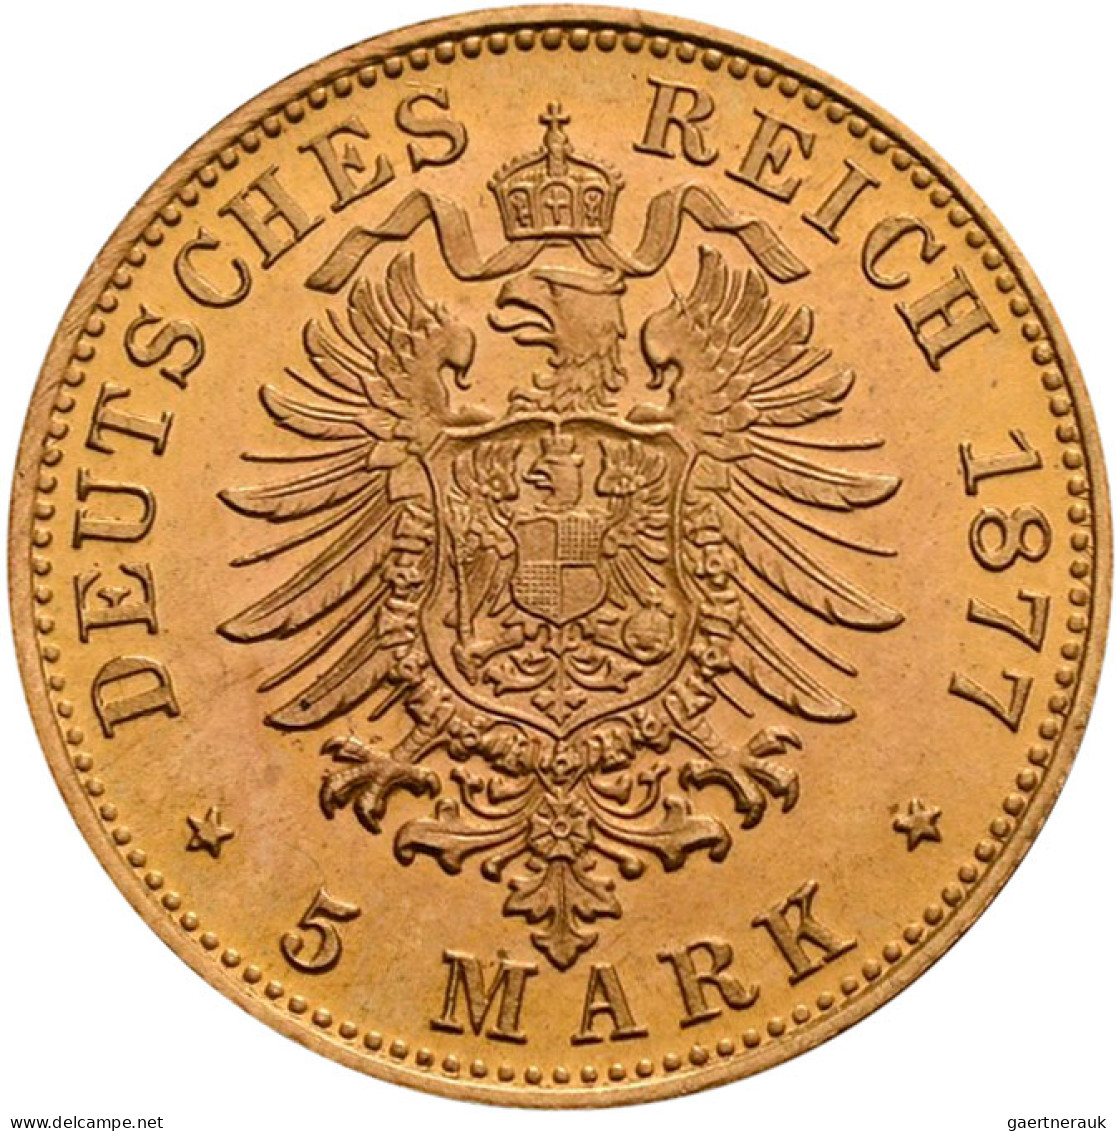 Hamburg: Freie Und Hansestadt: 5 Mark 1877 J, Jaeger 208. 1,98 G, 900/1000 Gold. - Goldmünzen